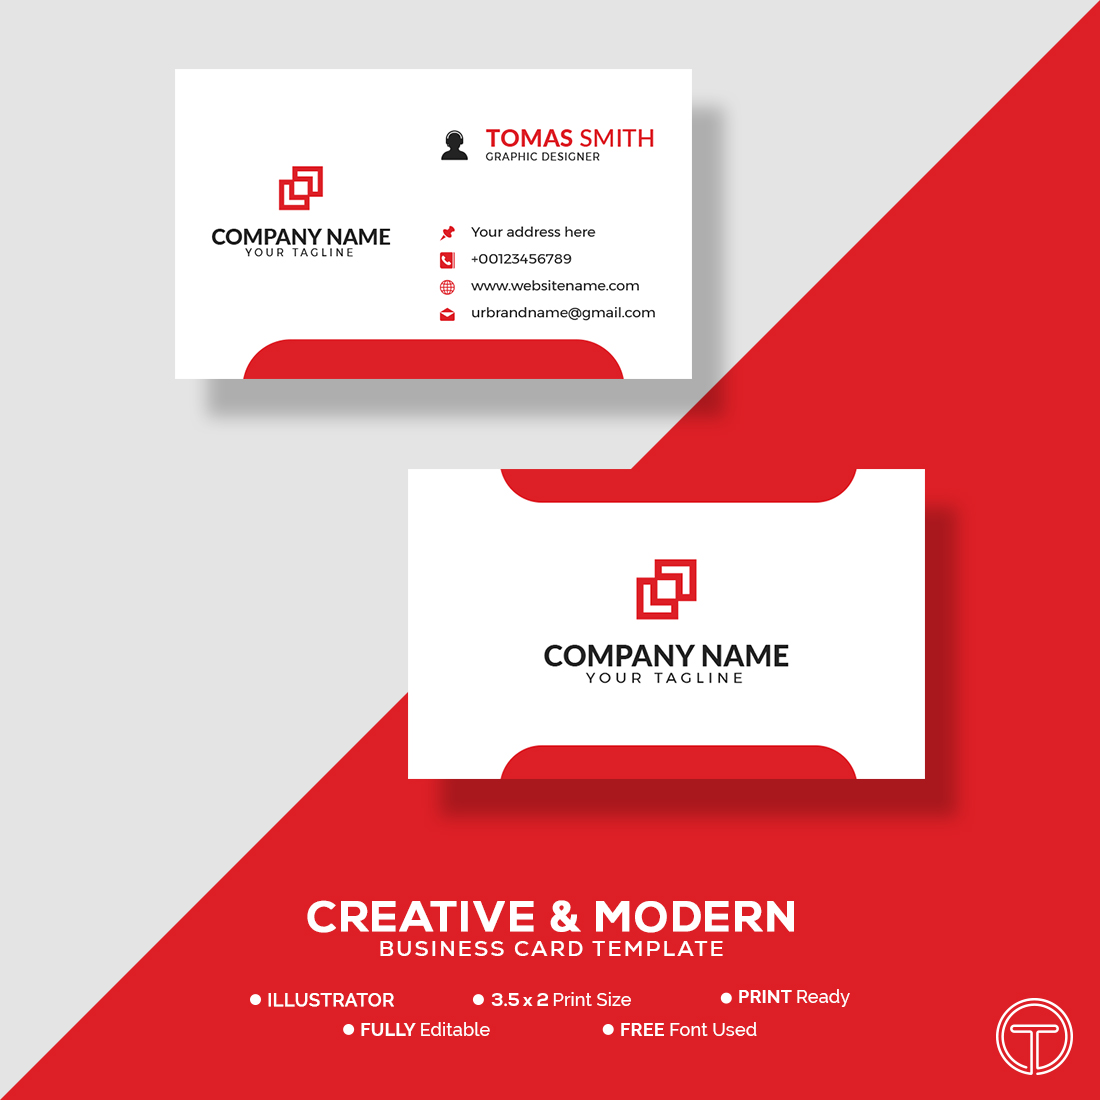 premium business card design vector image 1 1